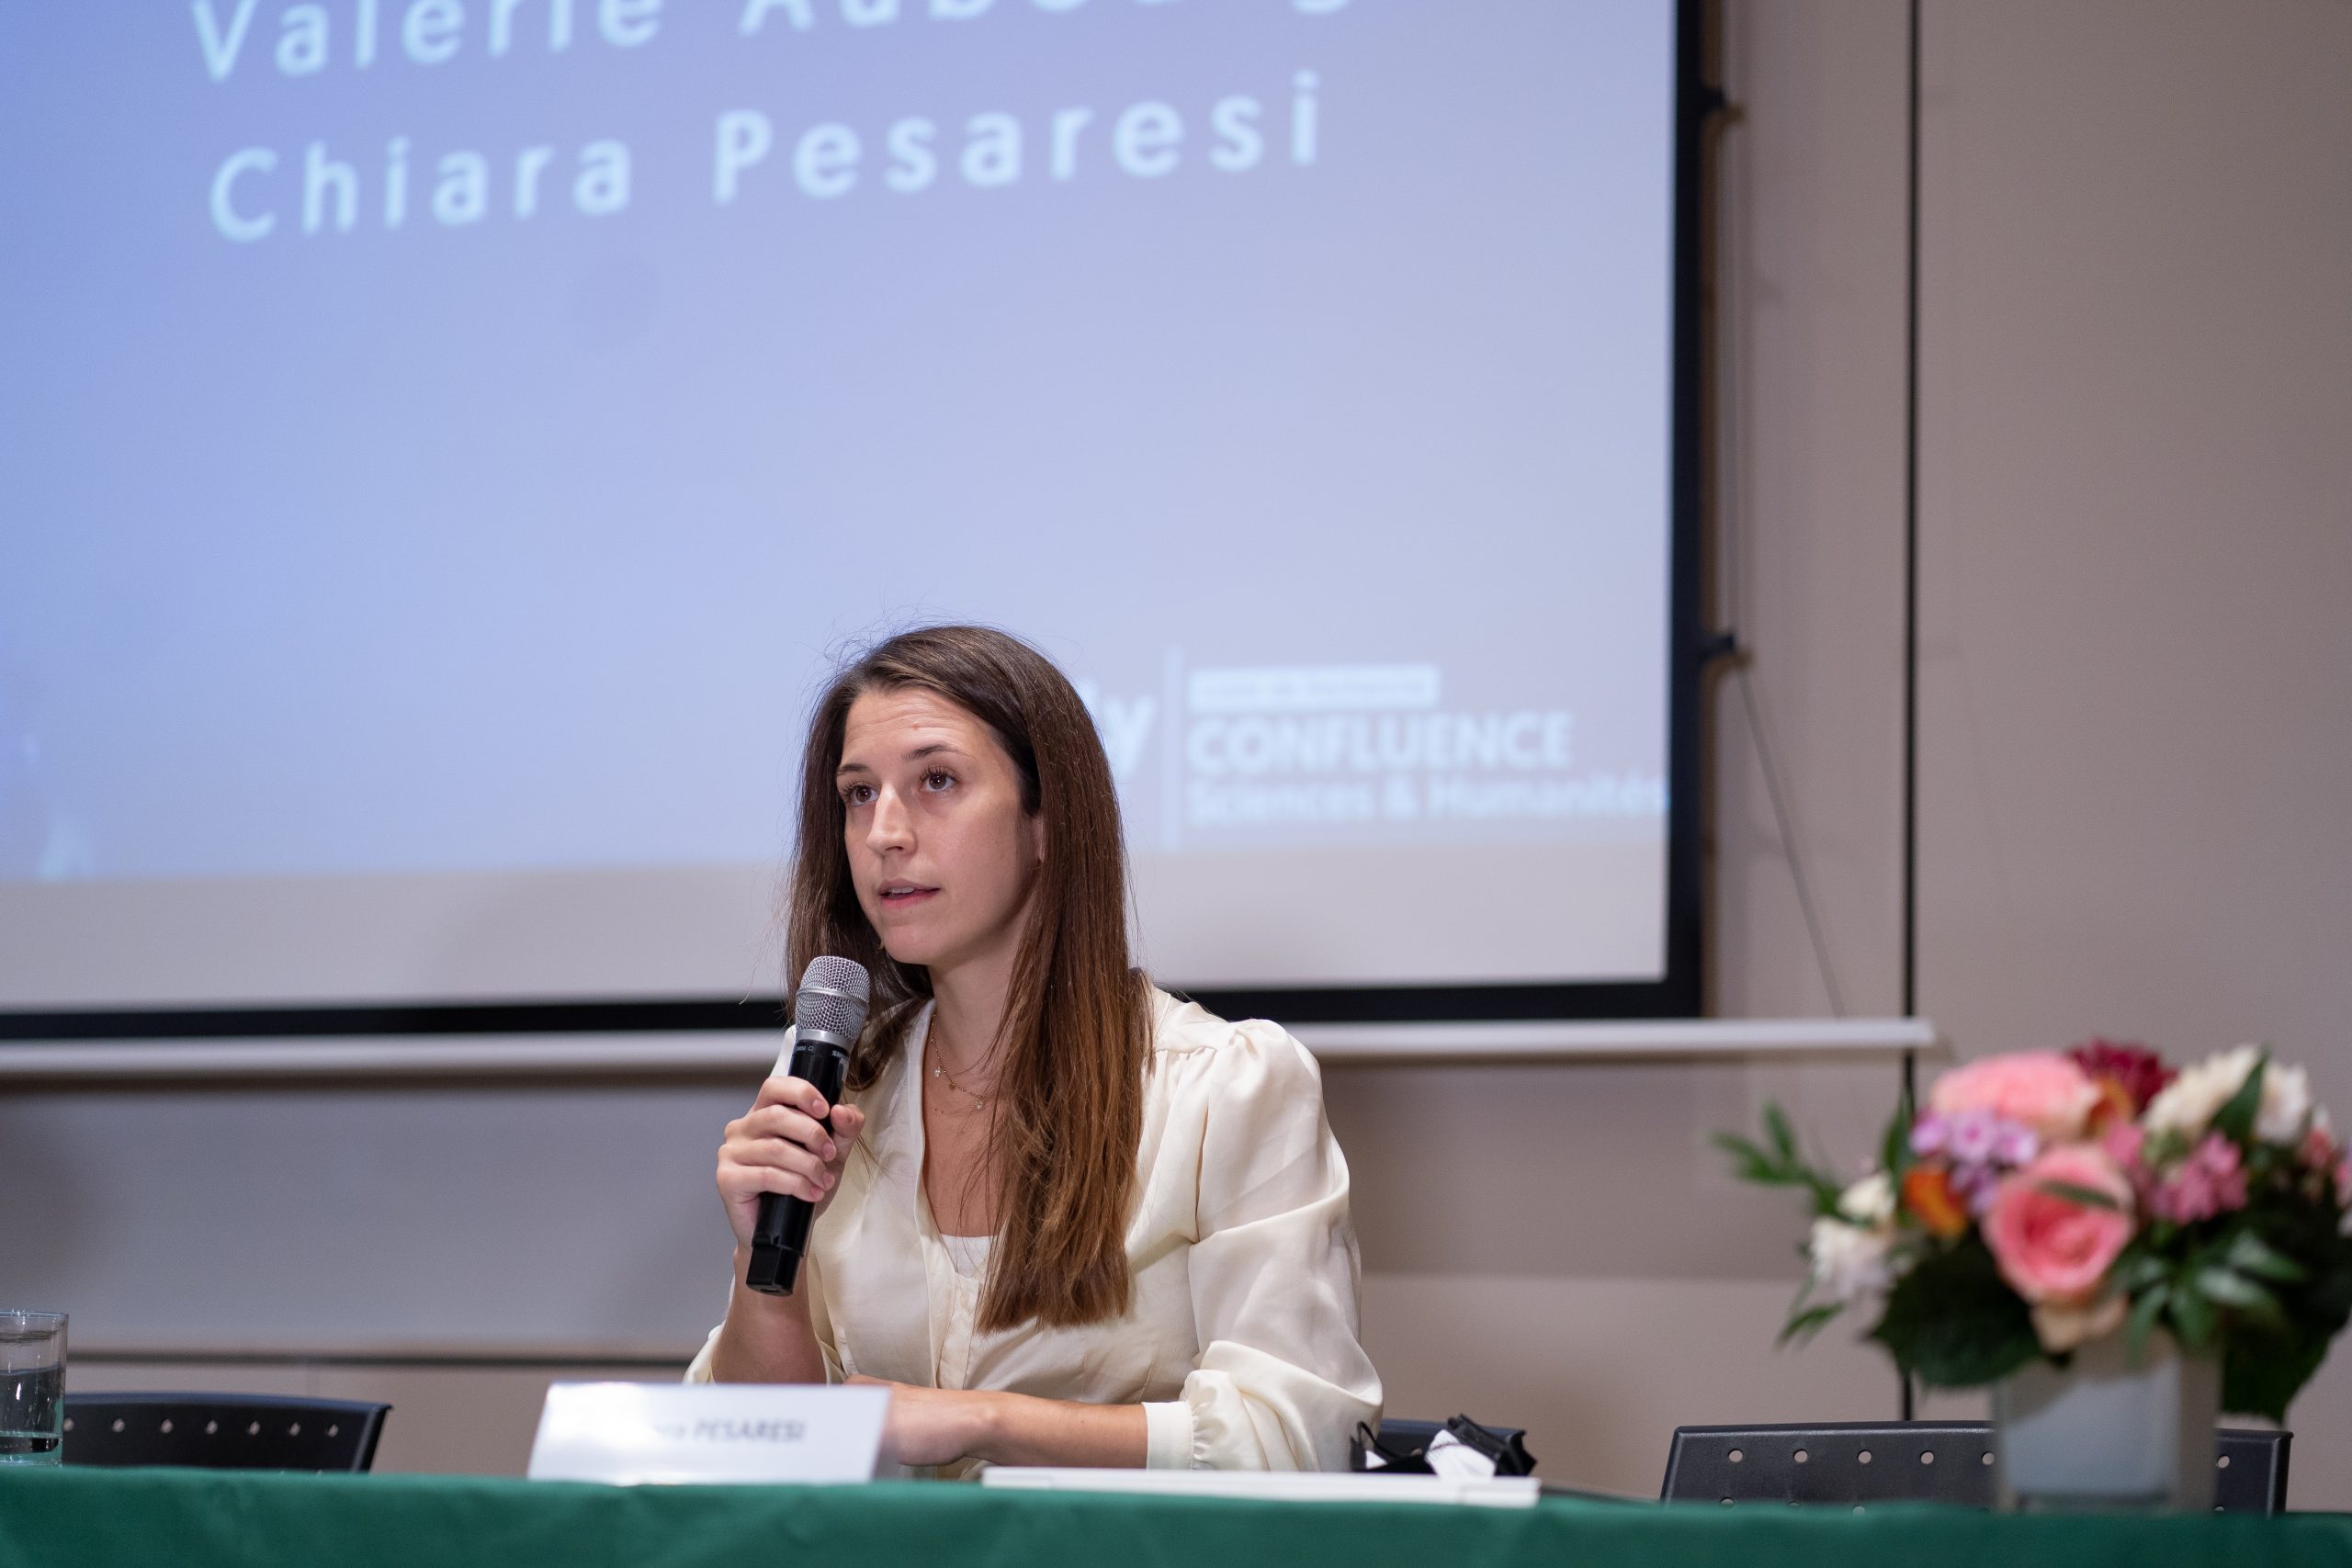 Chiara Pesaresi, Maître de conférences en philosophie à l’UCLy et Directrice scientifique de la Chaire d’Université Vulnérabilités